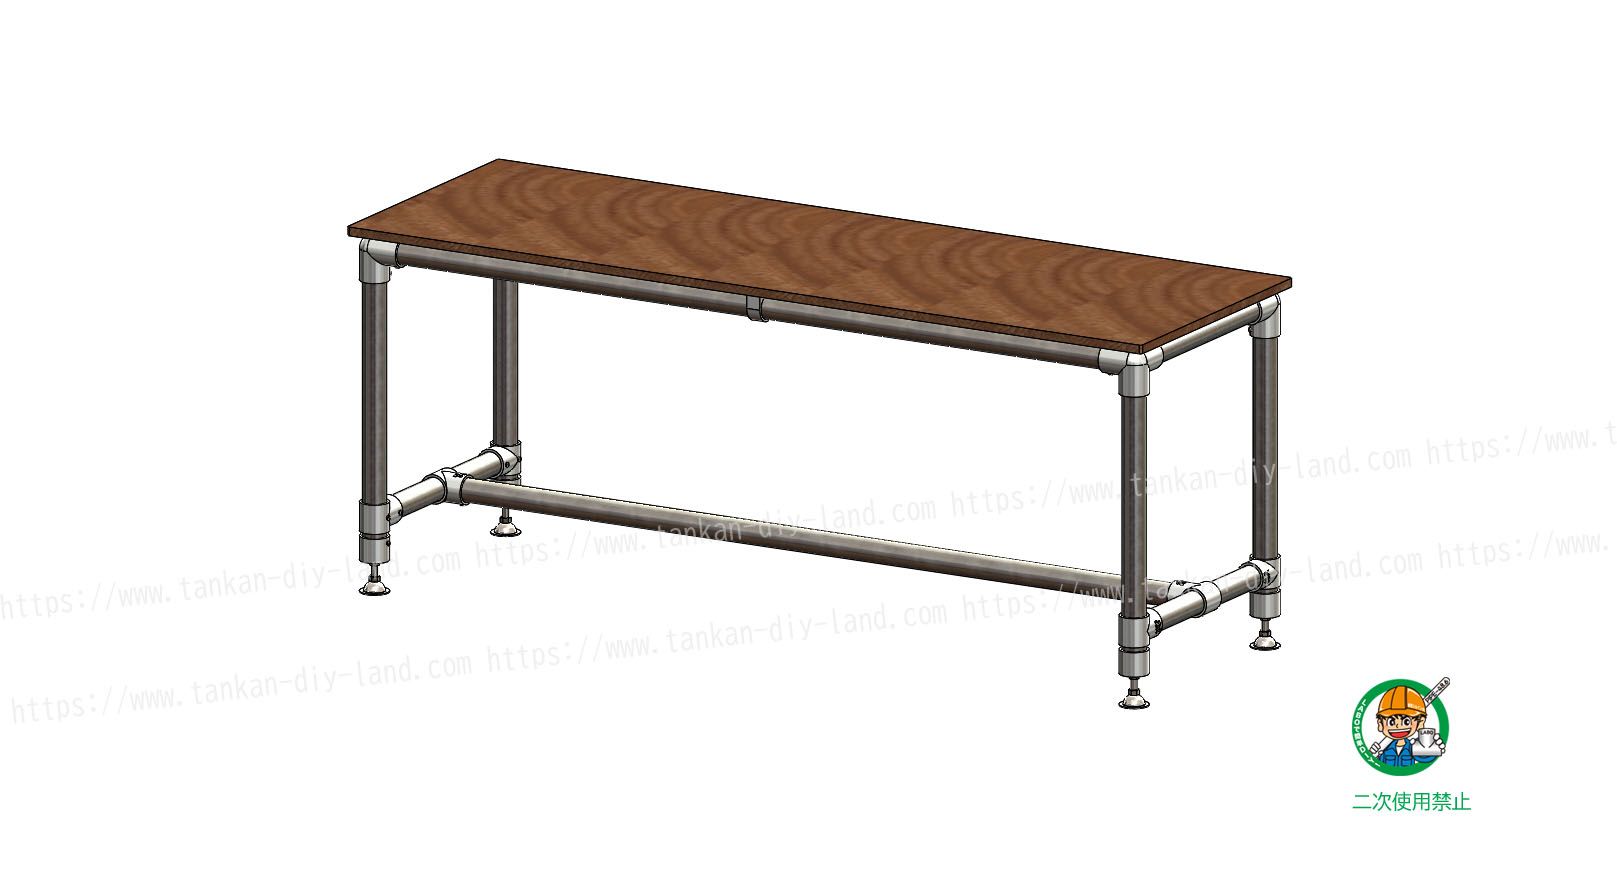 丈夫でシンプルなテーブル テーブル 1 単管パイプで作る 単管パイプのdiy向け 技術者向けの情報なら単管diyランド